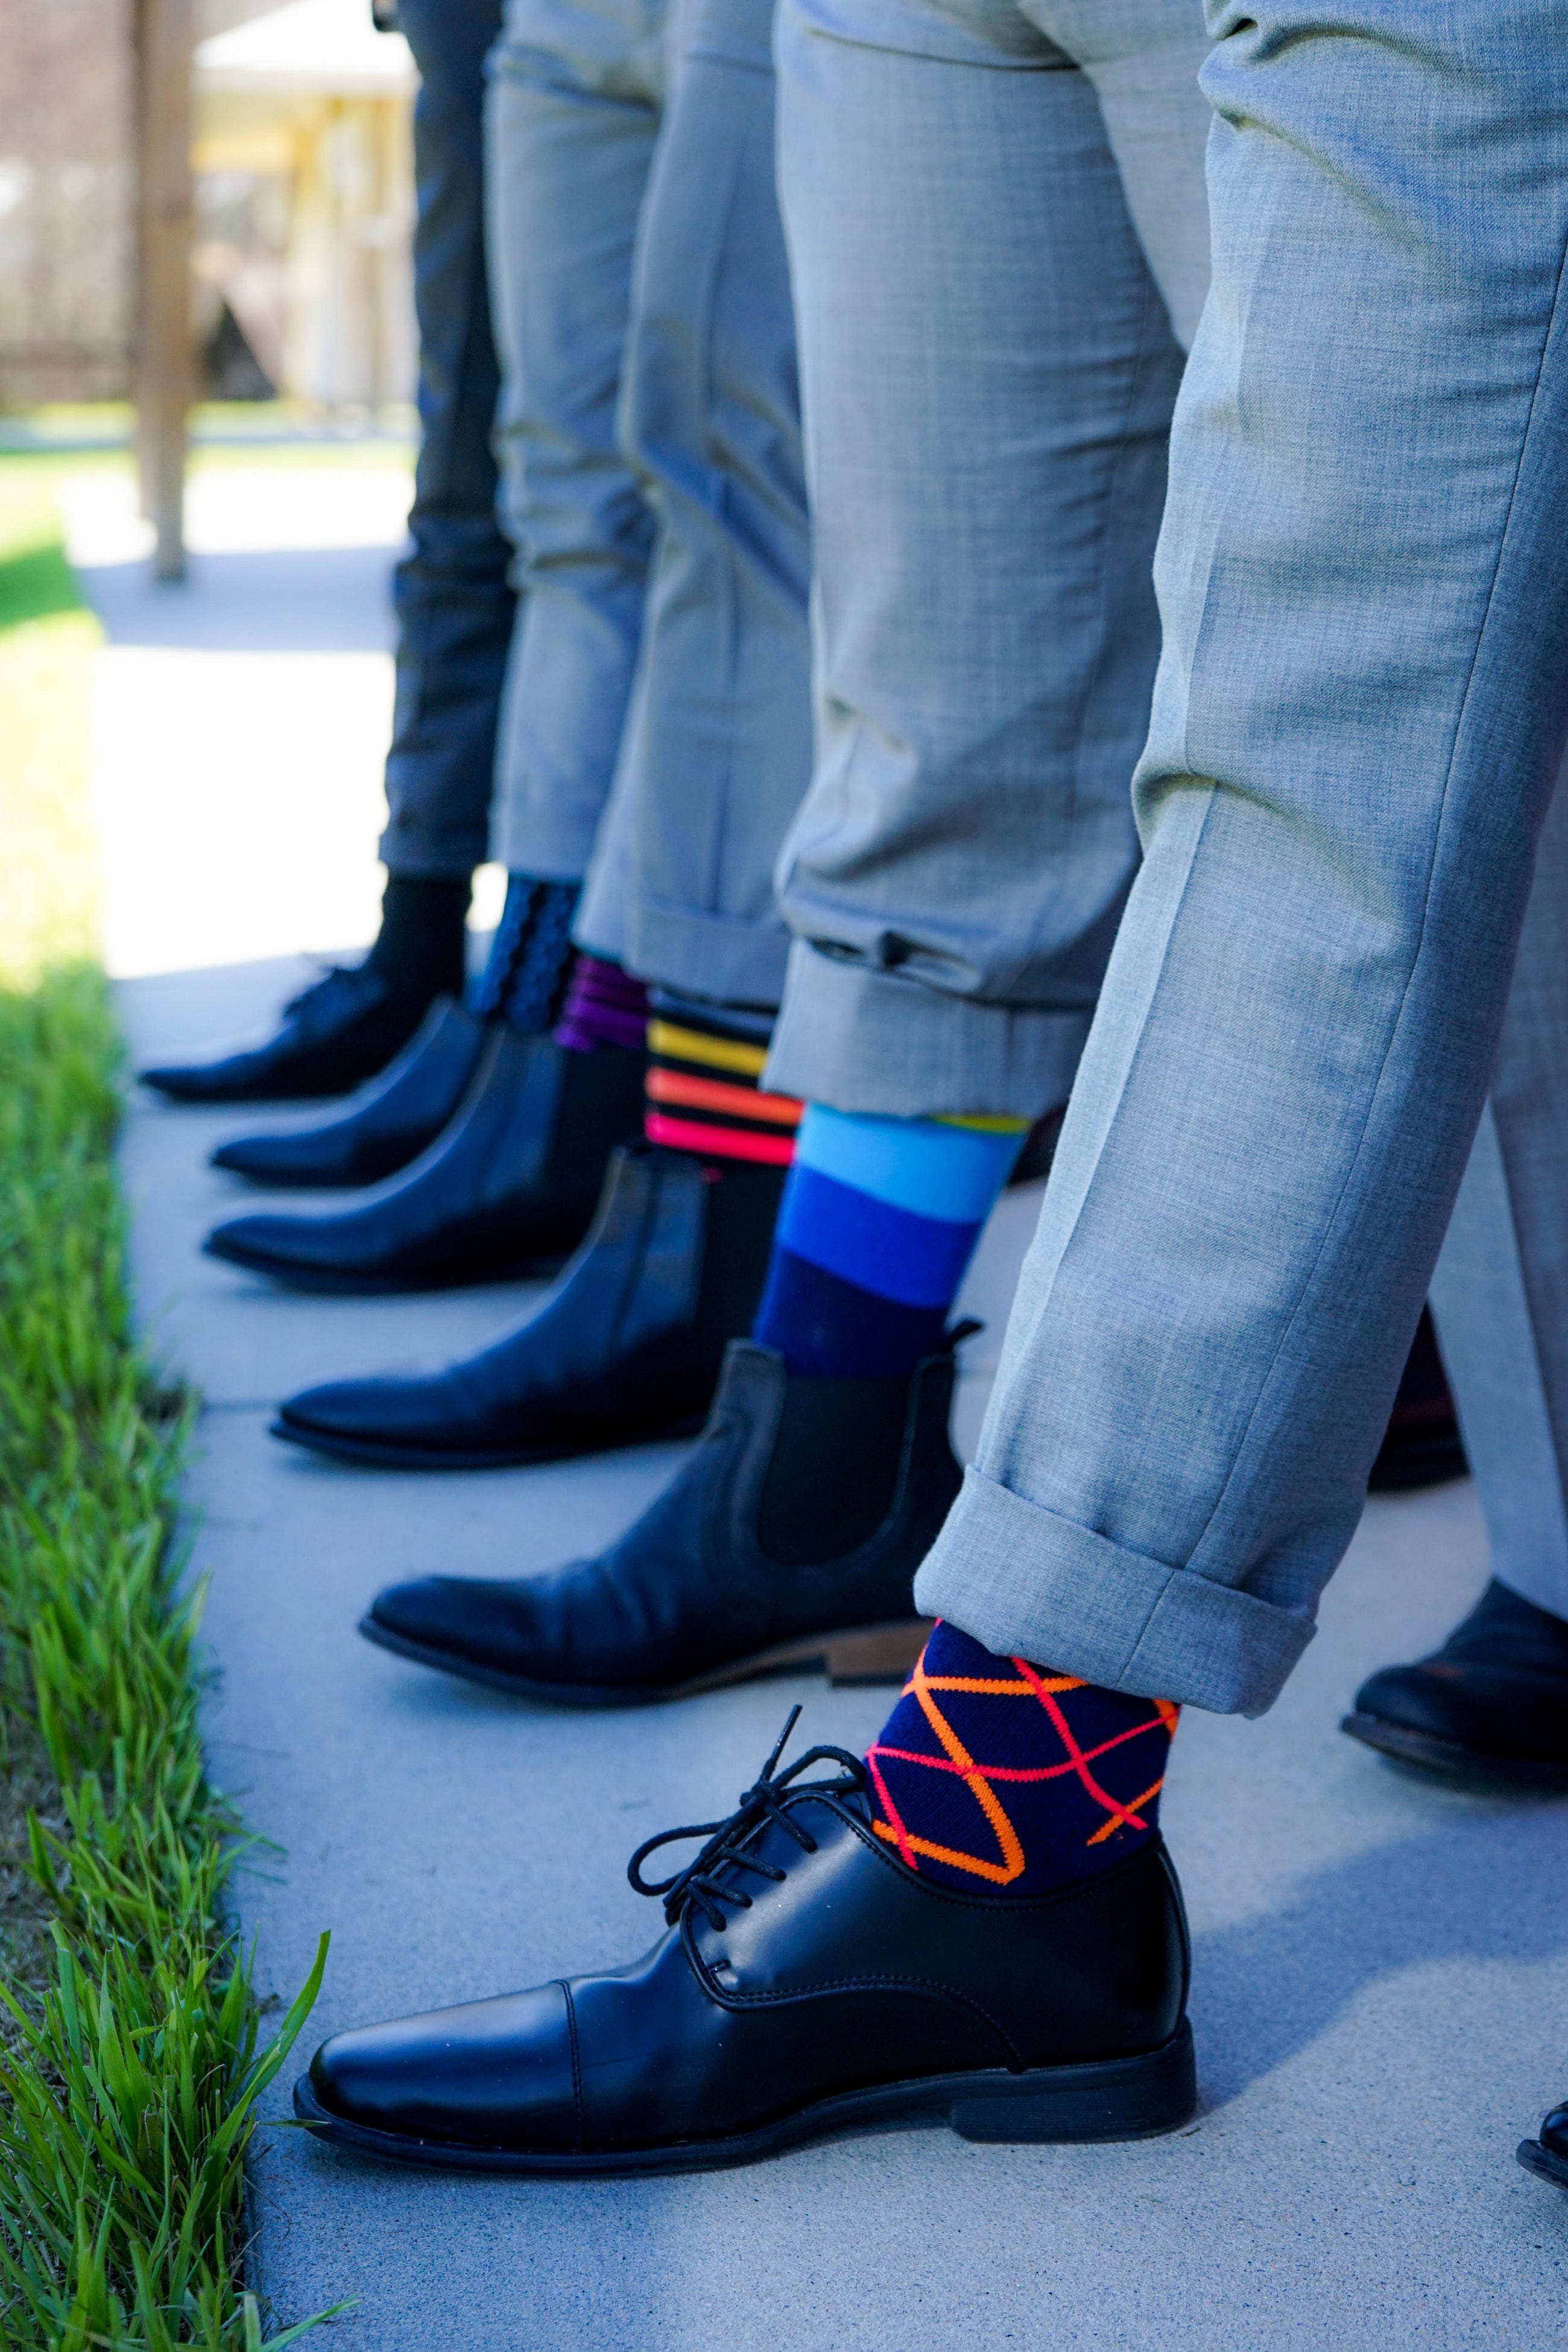 Men wearing odd socks in a line of feet